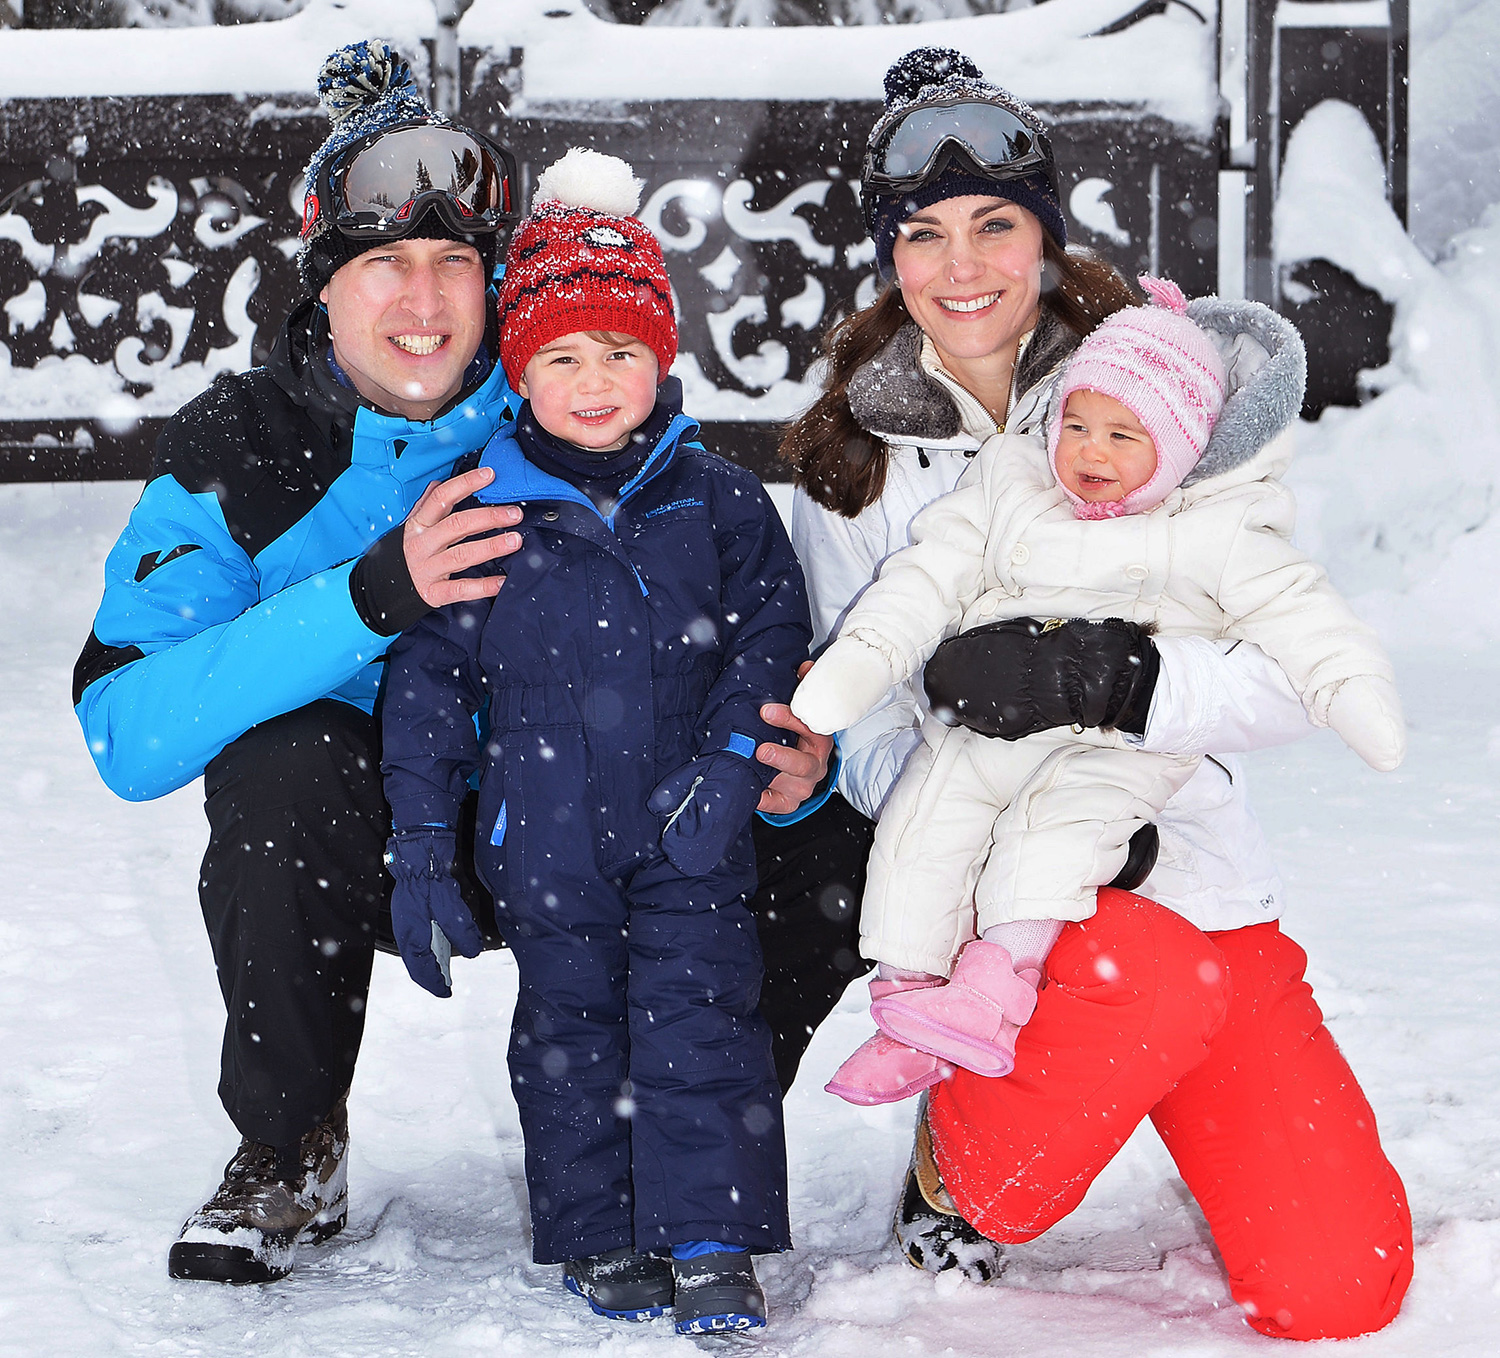 威廉凱特法國阿爾卑斯度假_夏綠蒂小公主、喬治王子玩雪初體驗5.jpg